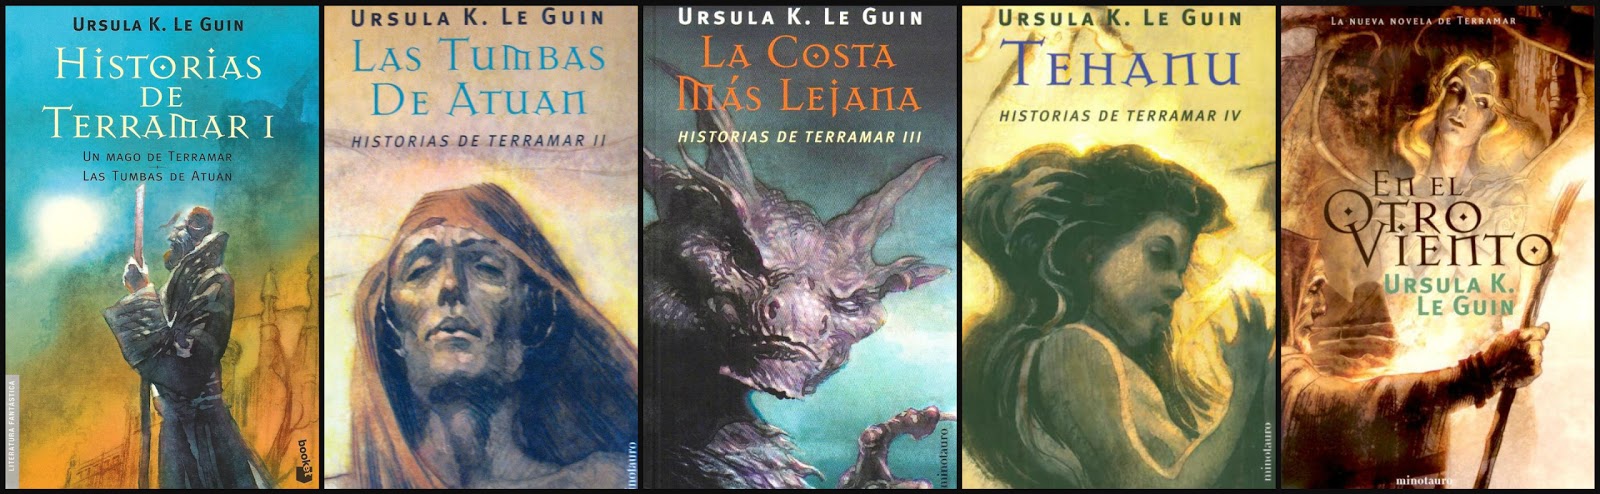 10 sagas de libros de fantasía increíbles que no incluyen Juego de Tronos